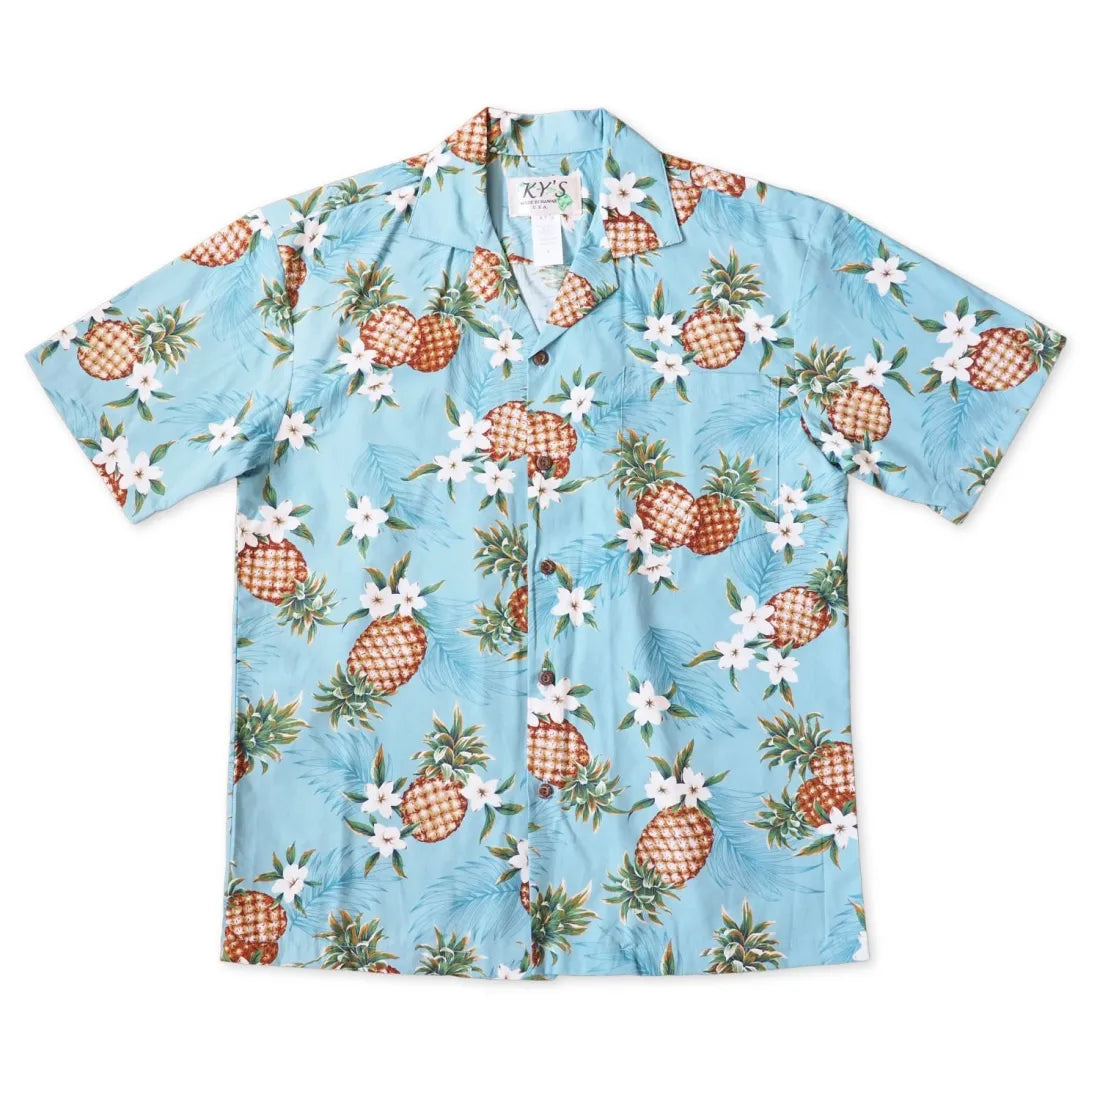 Pineapple Jam Teal Hawaiian Cotton Shirt - Made In Hawaii